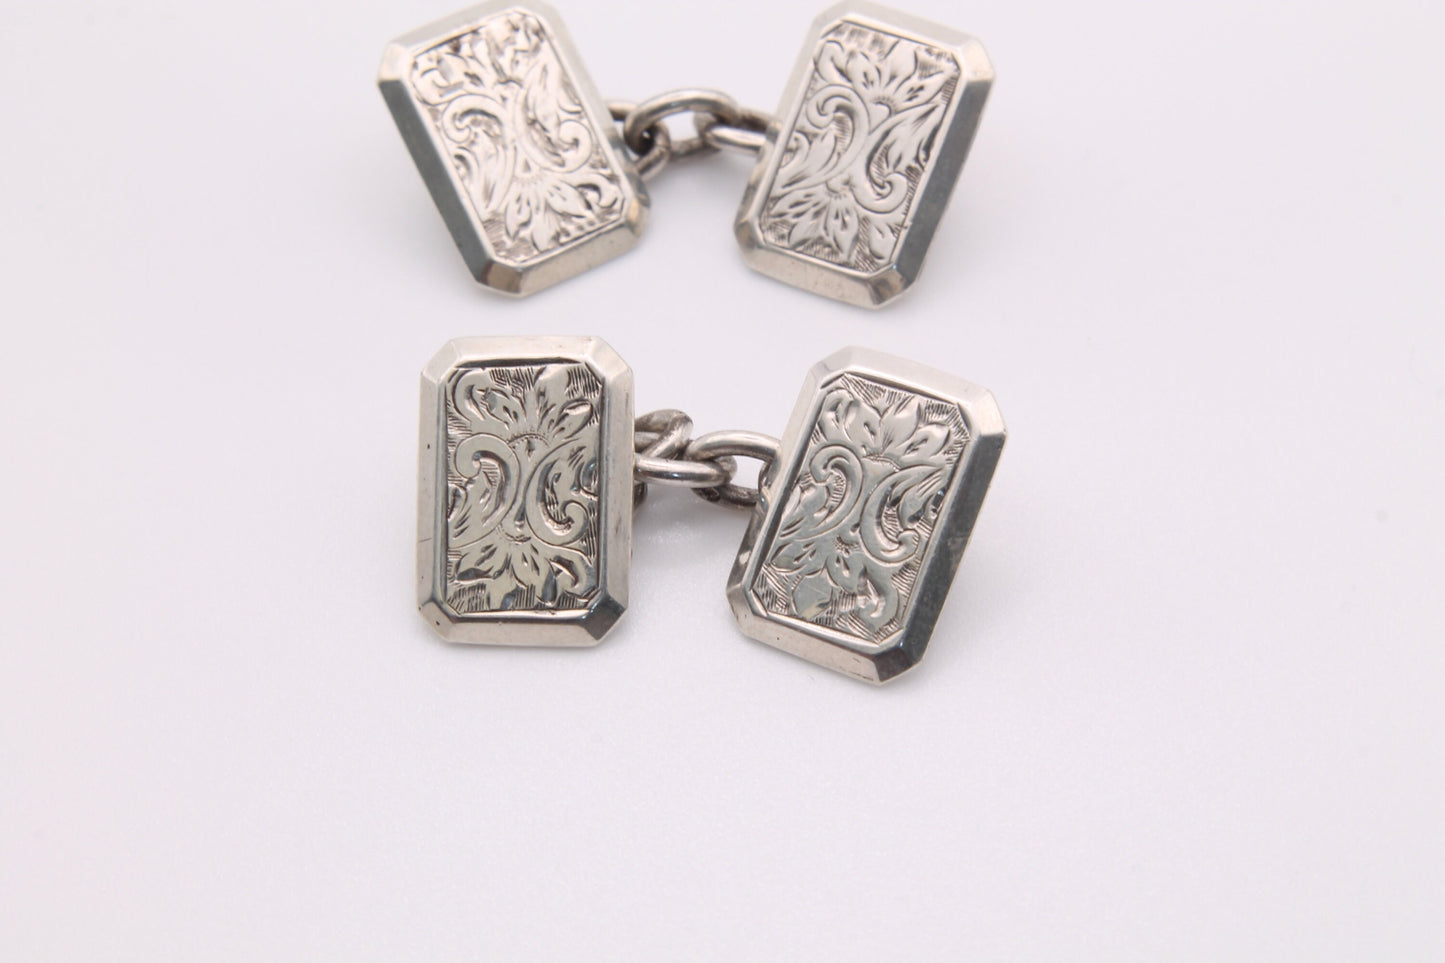 Antique Victorian Silver Engraved Cufflinks - 1893